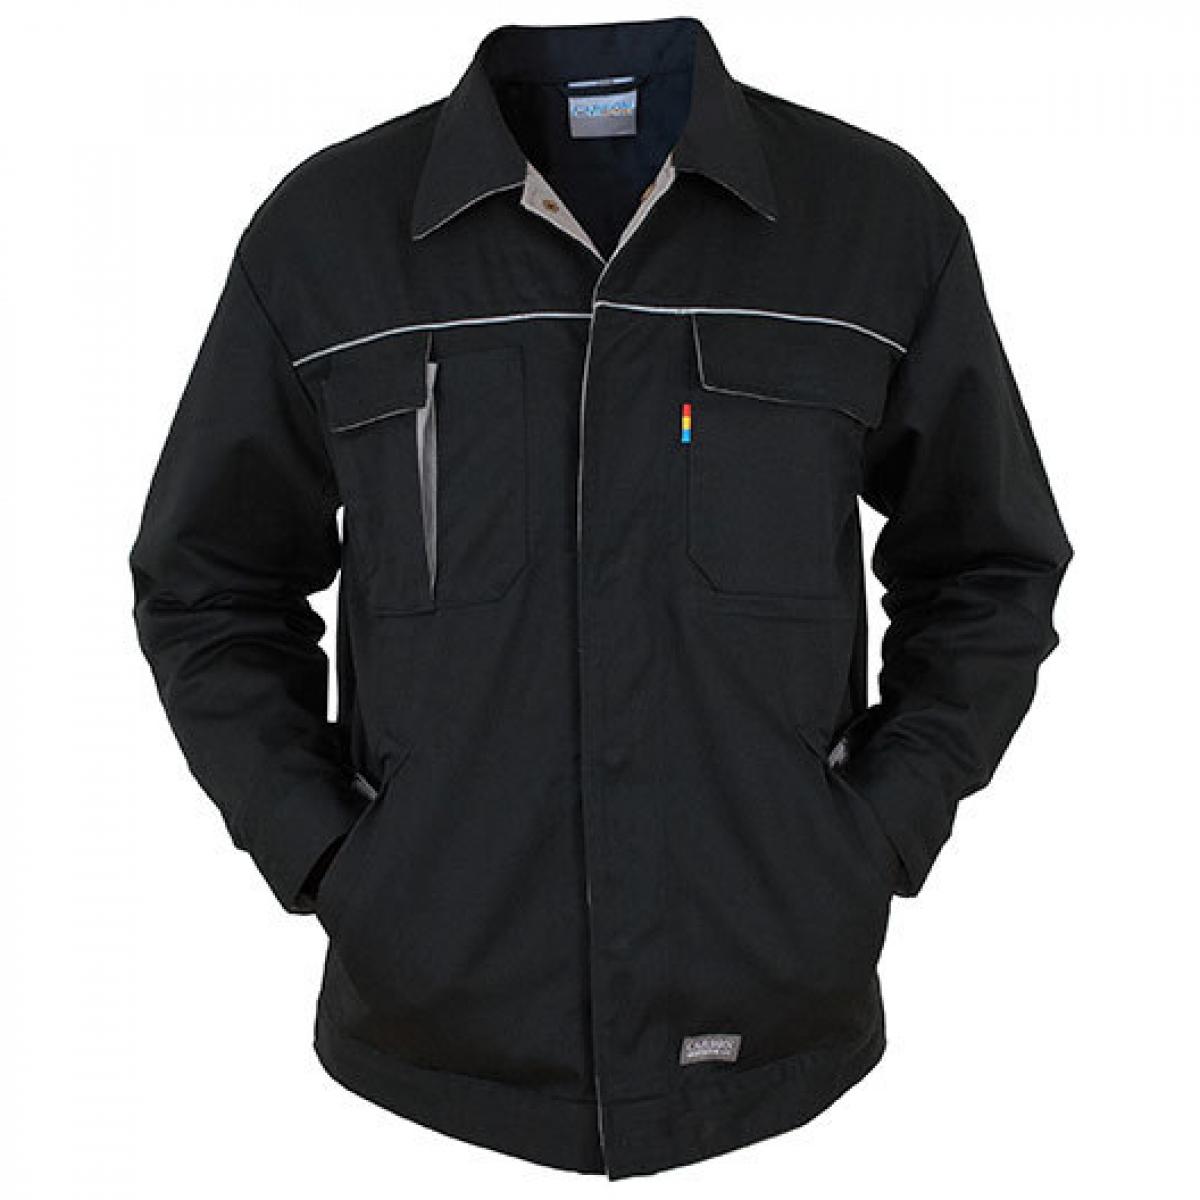 Hersteller: Carson Contrast Herstellernummer: CC710 Artikelbezeichnung: Herren Contrast Work Jacket / Bei 60 Grad waschbar Farbe: Black/Grey